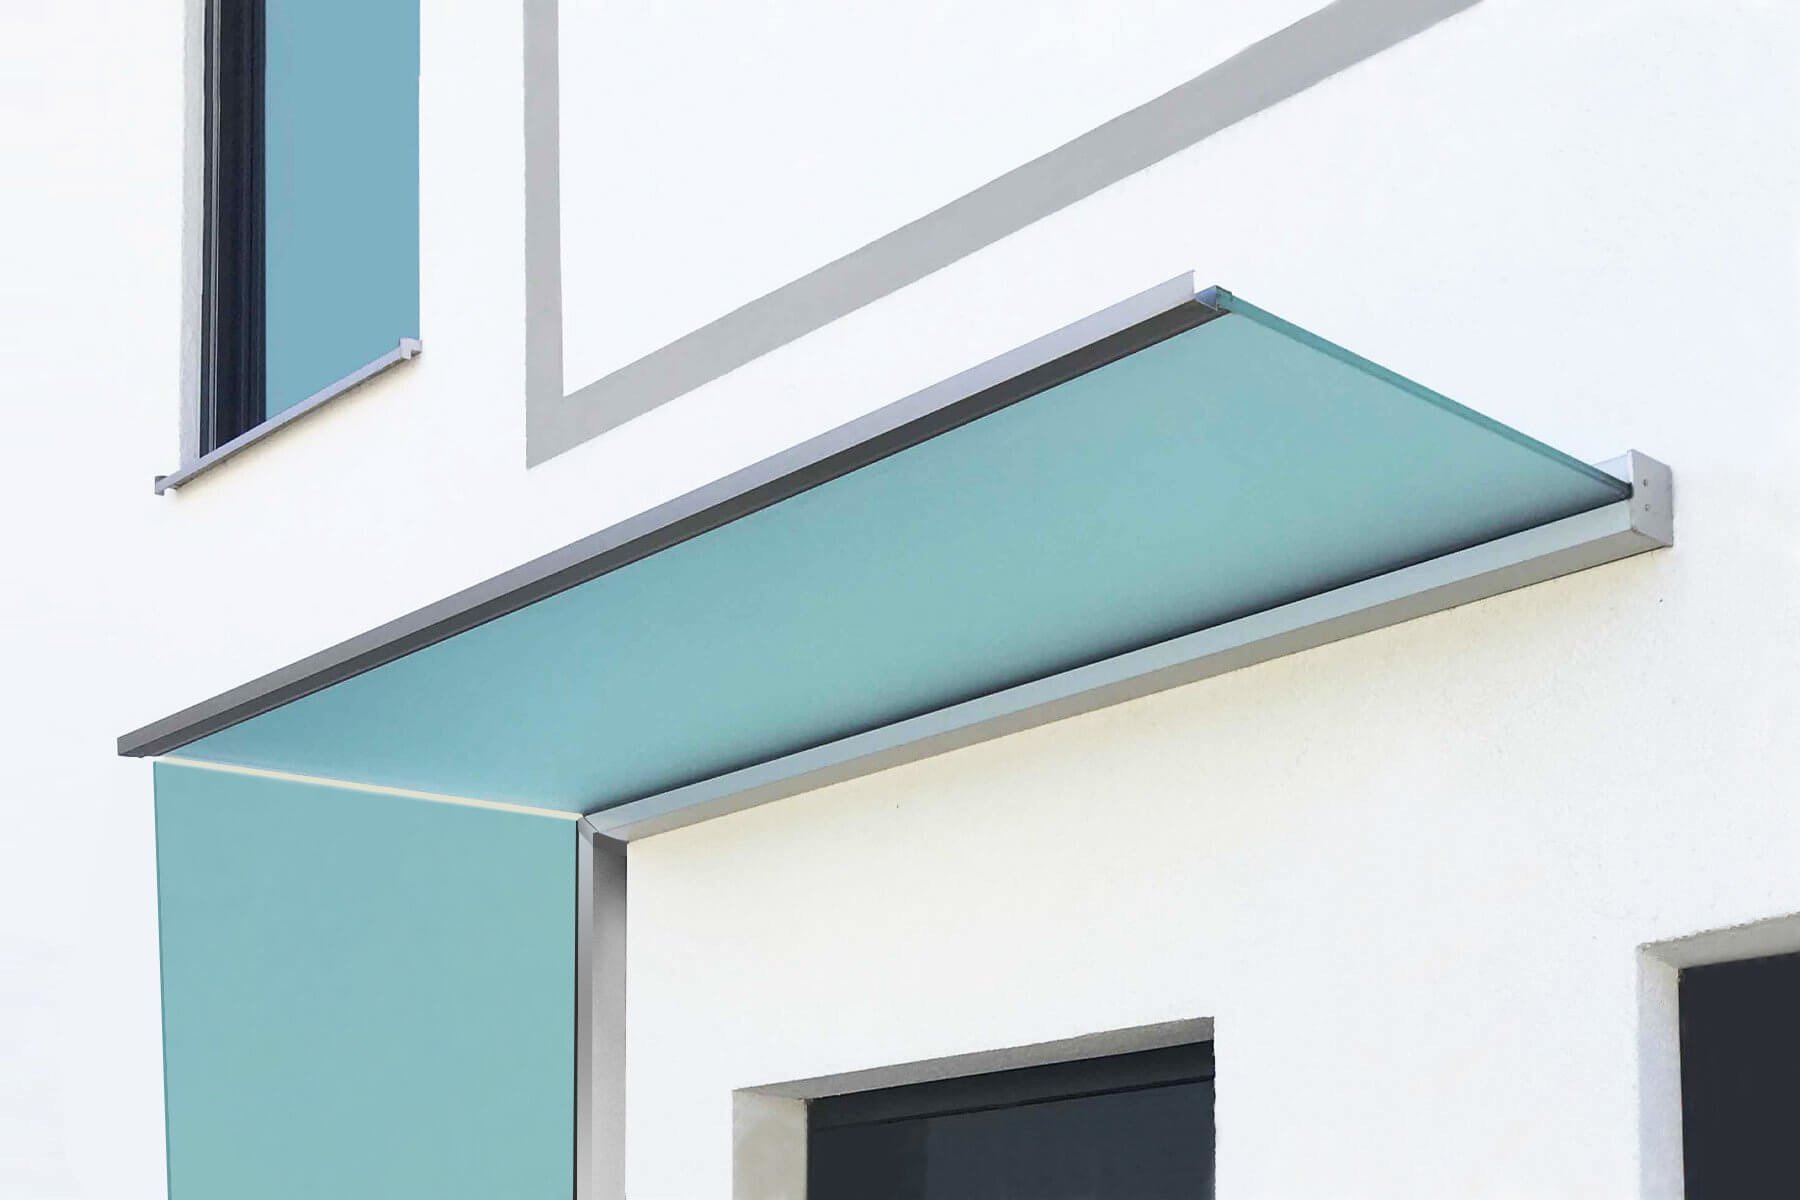 Hochwertiges Vordach mit Seitenwindschutz aus satiniertem Glas sorgt zusätzlich für Sichtschutz